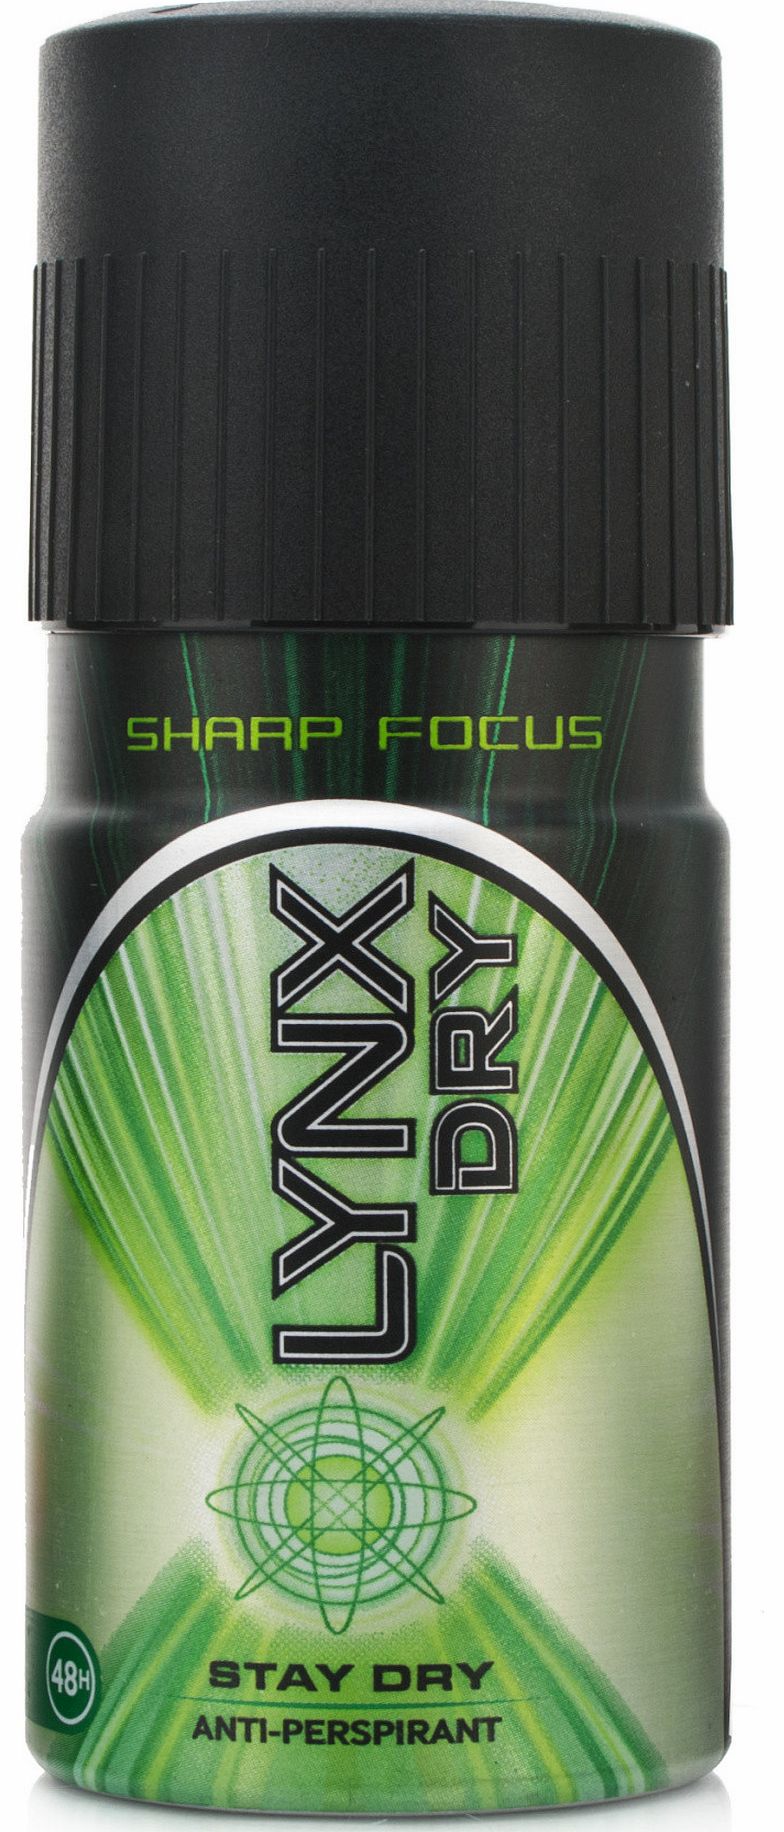 Dry Sharp Focus Anti-Perspirant Deodorant